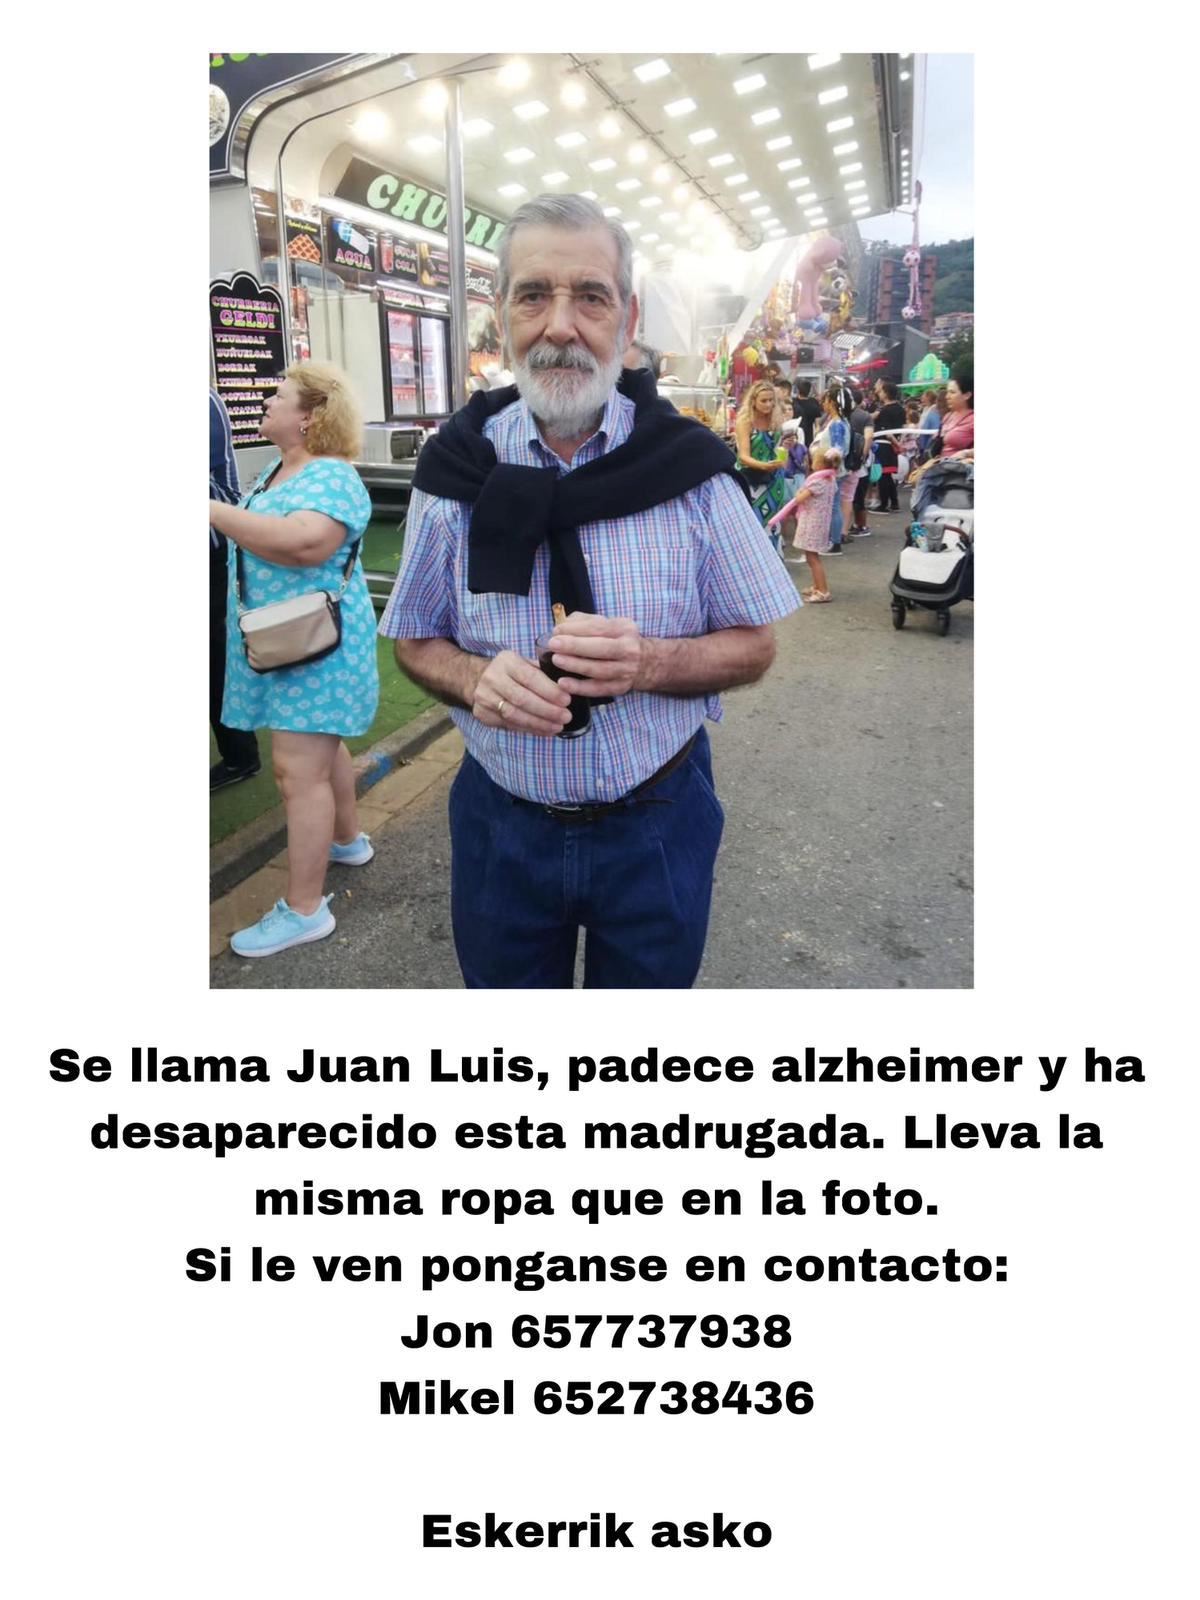 Juan Luis, persona desaparecida en Bilbao. Foto cedida por la familia